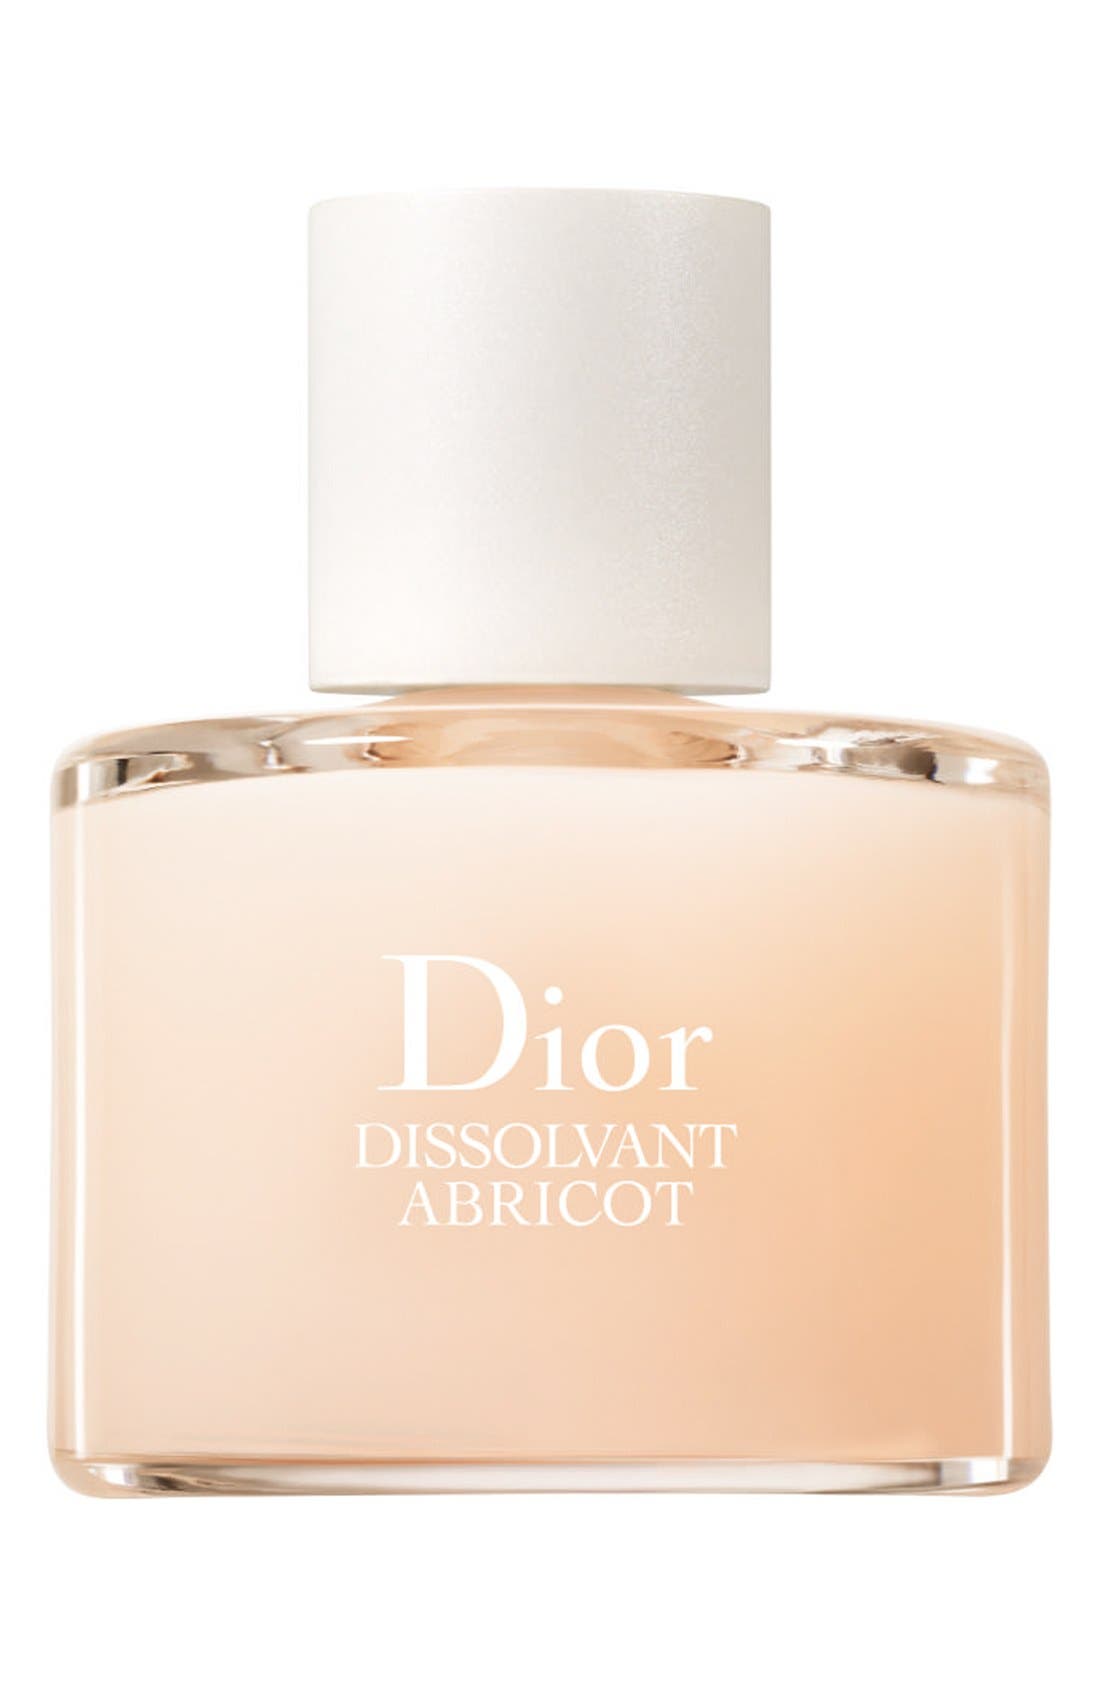 Dior 'Dissolvant Abricot' Nail Polish 